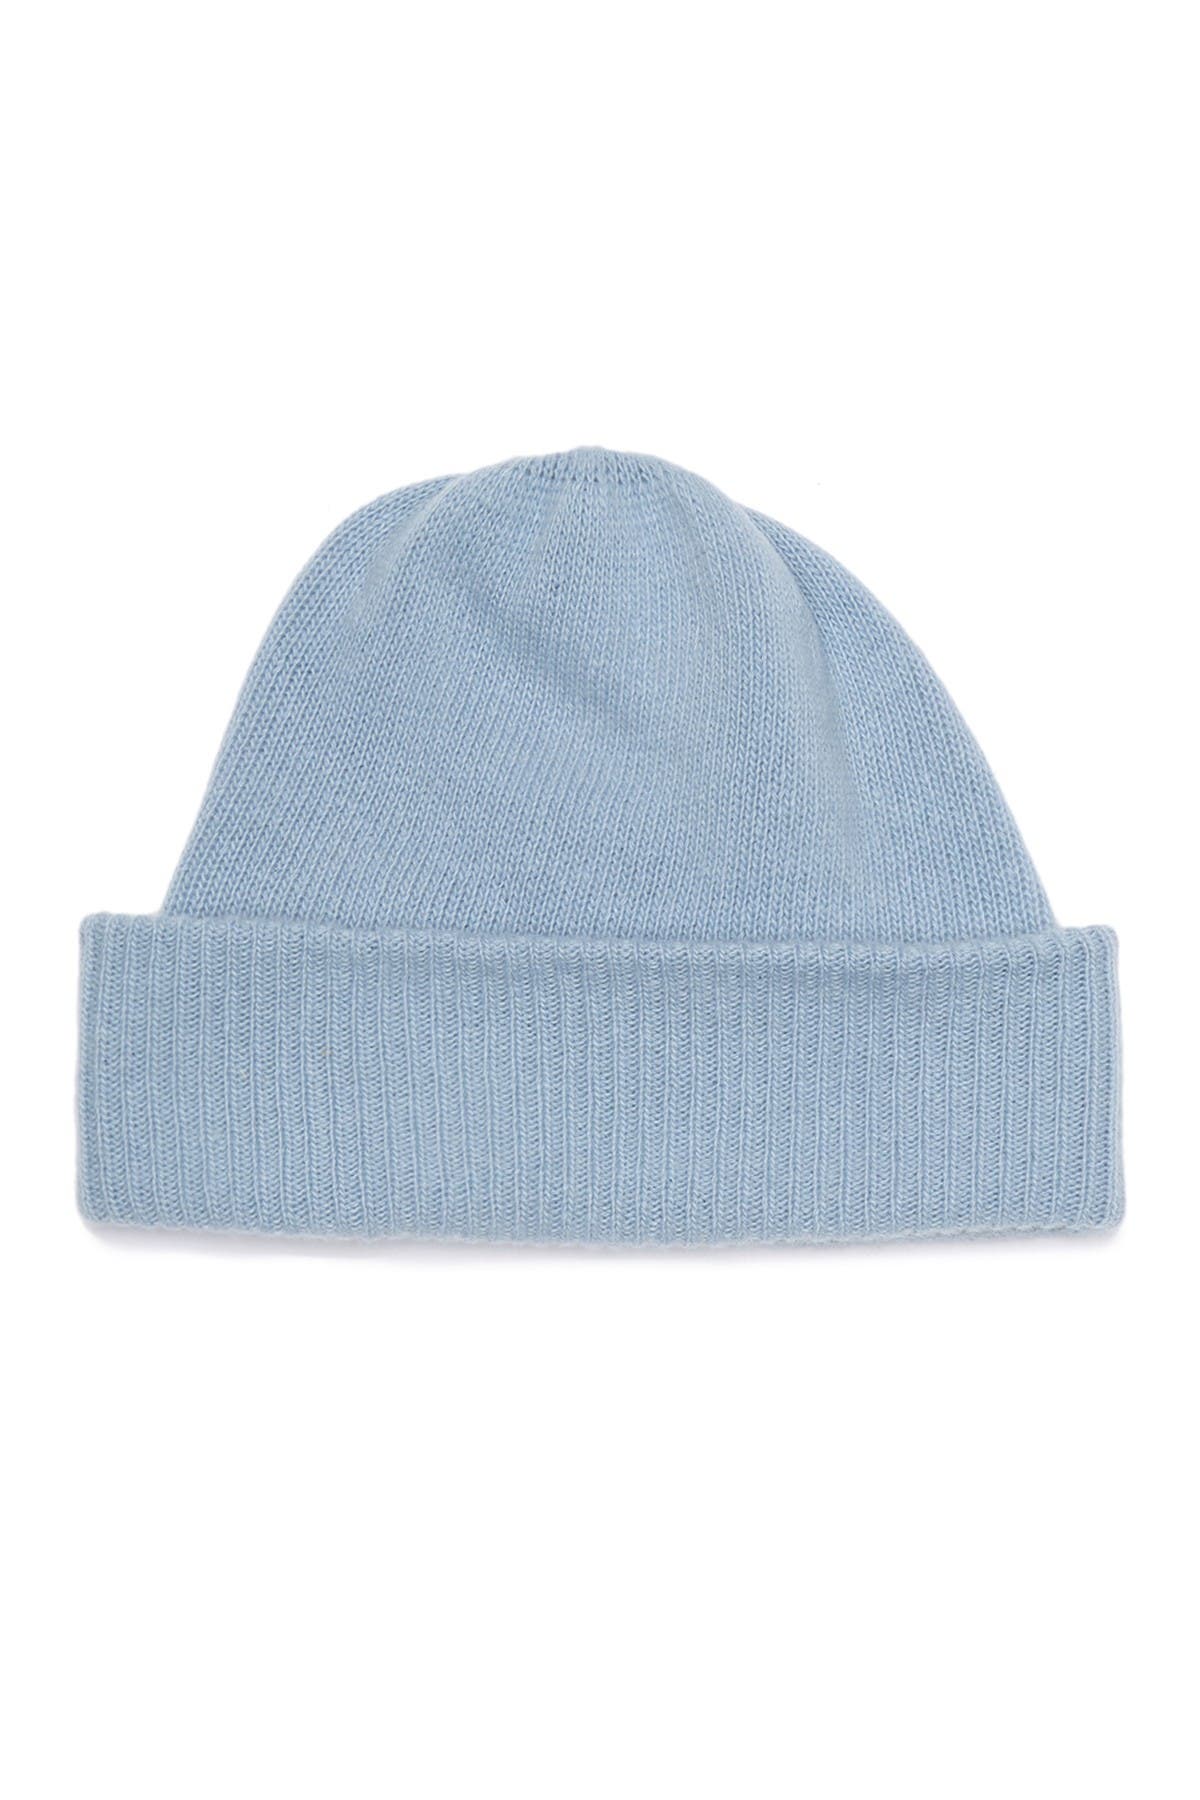 Portolano Cashmere Rib Hat In Baby Blue